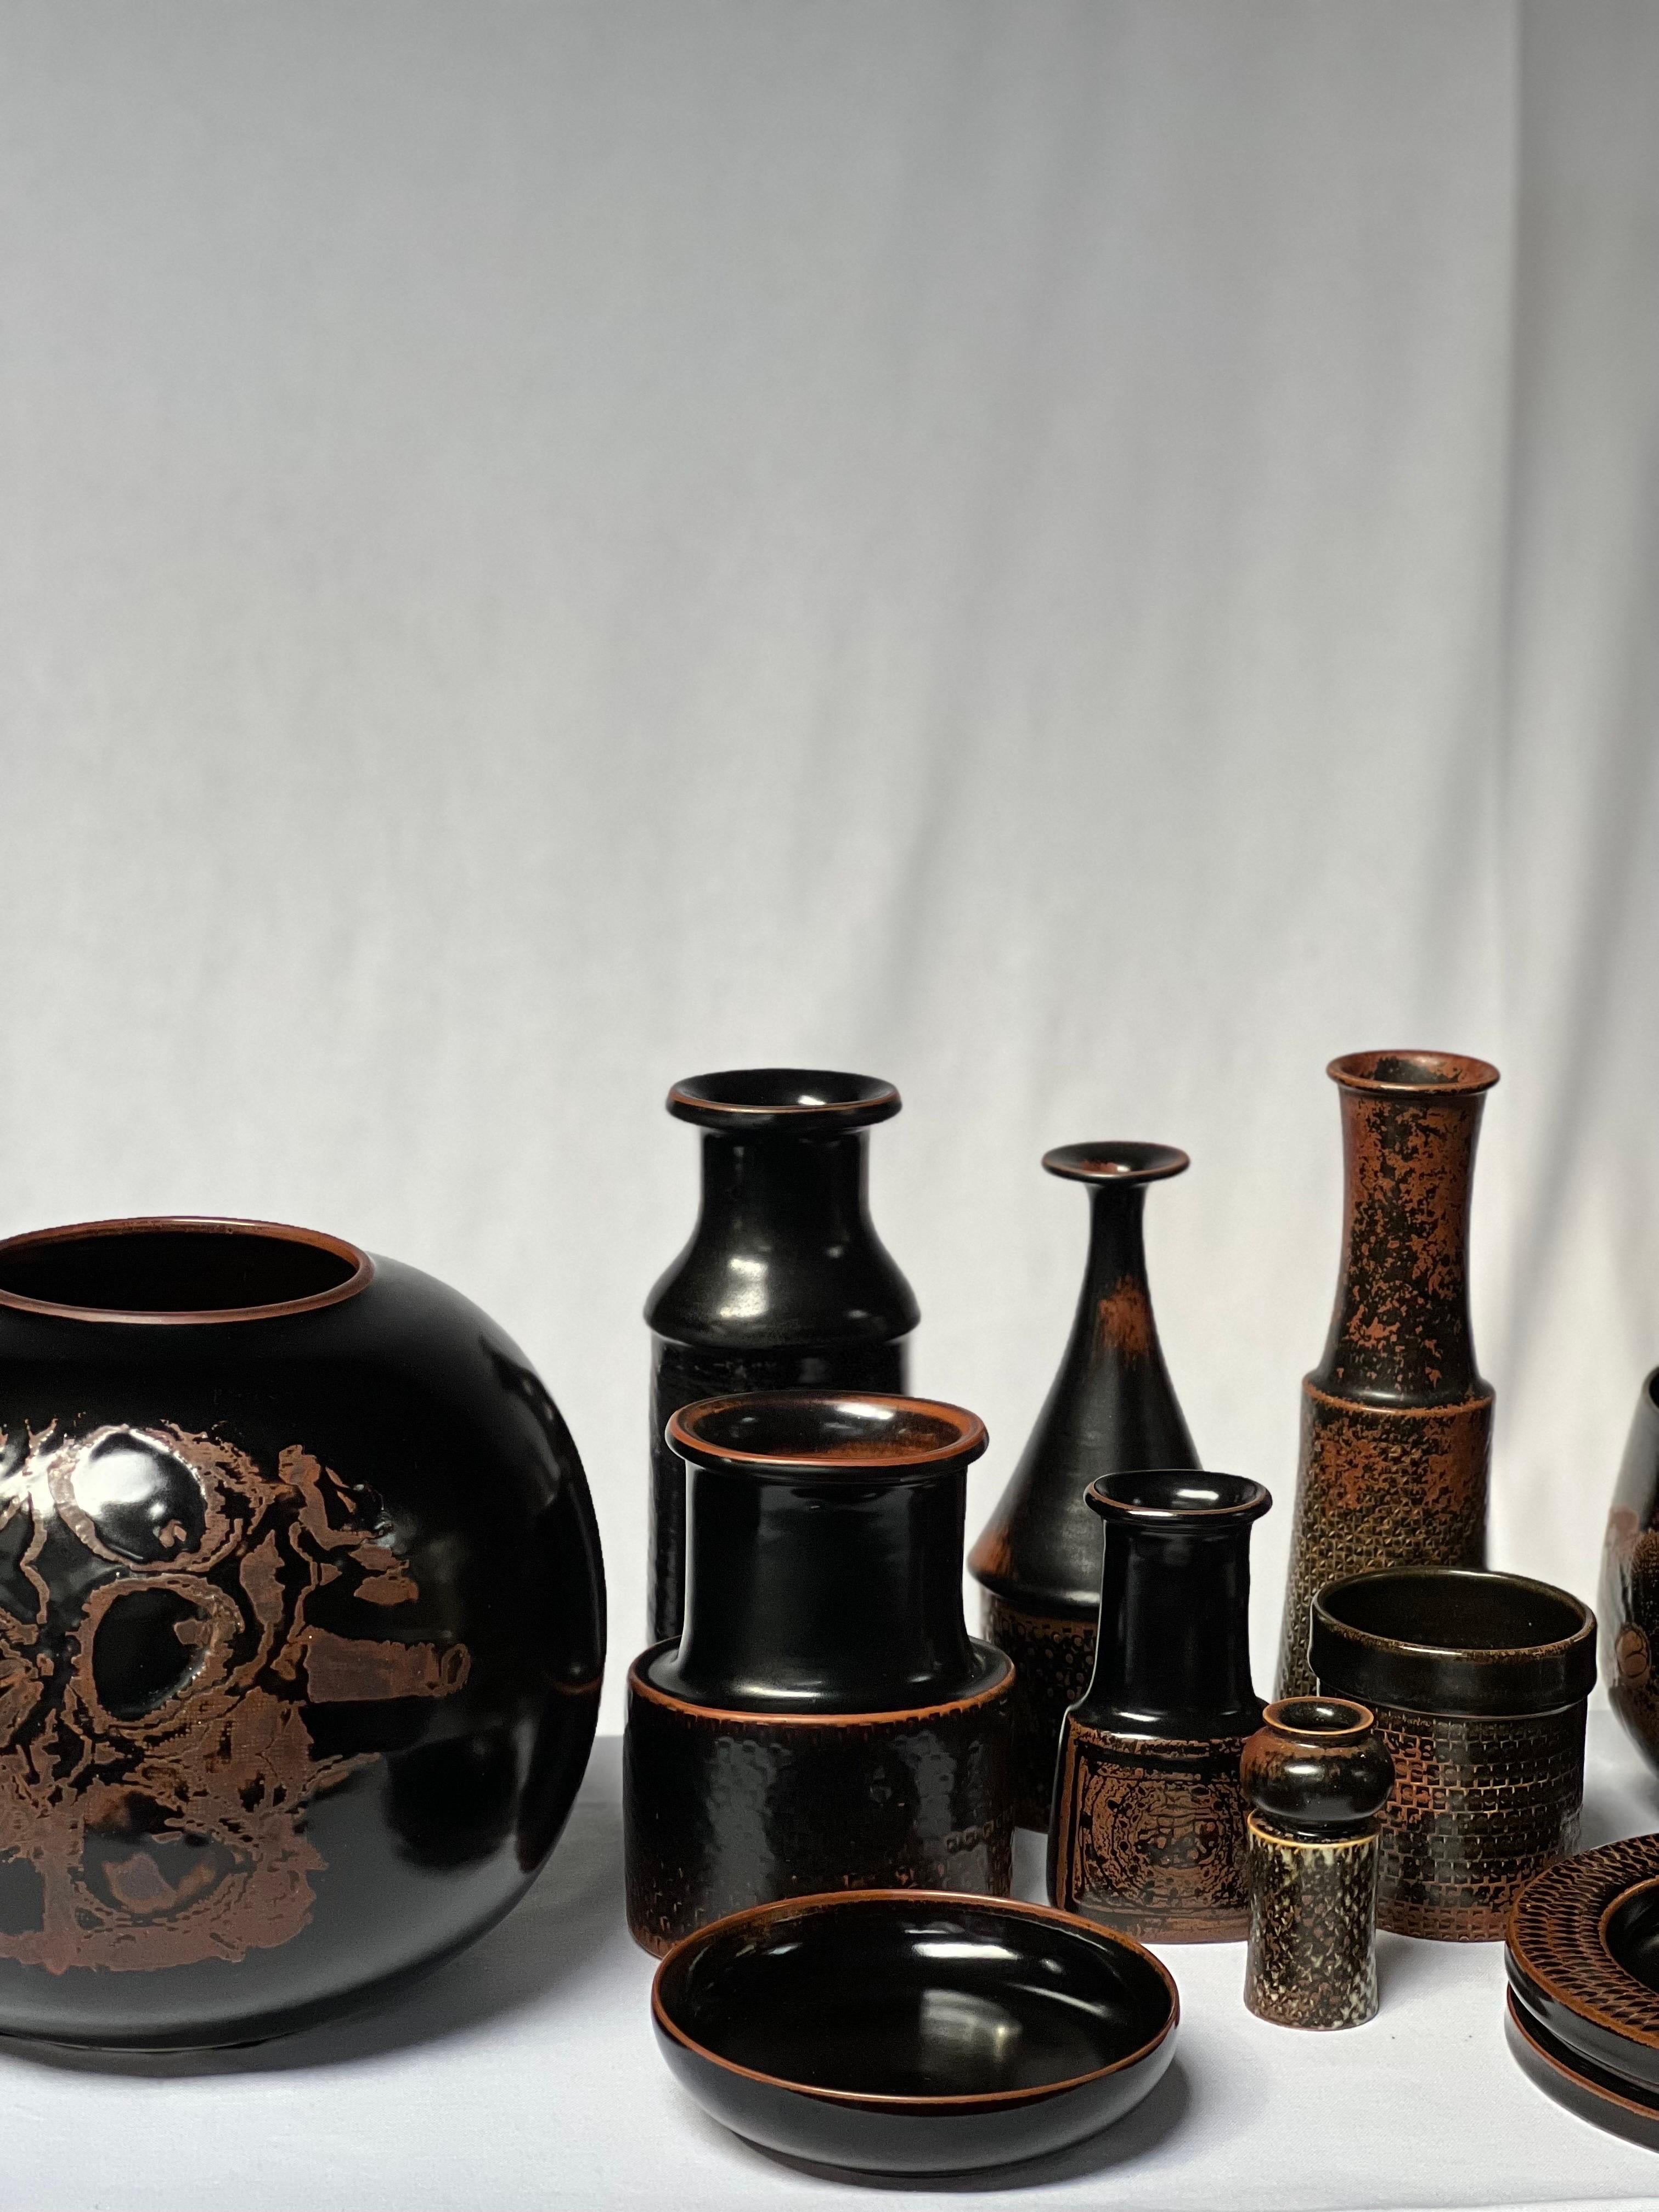 Stig Lindberg Unique Vase in black Glaze Tenmoku Made by Hand Sweden 1969 For Sale 8